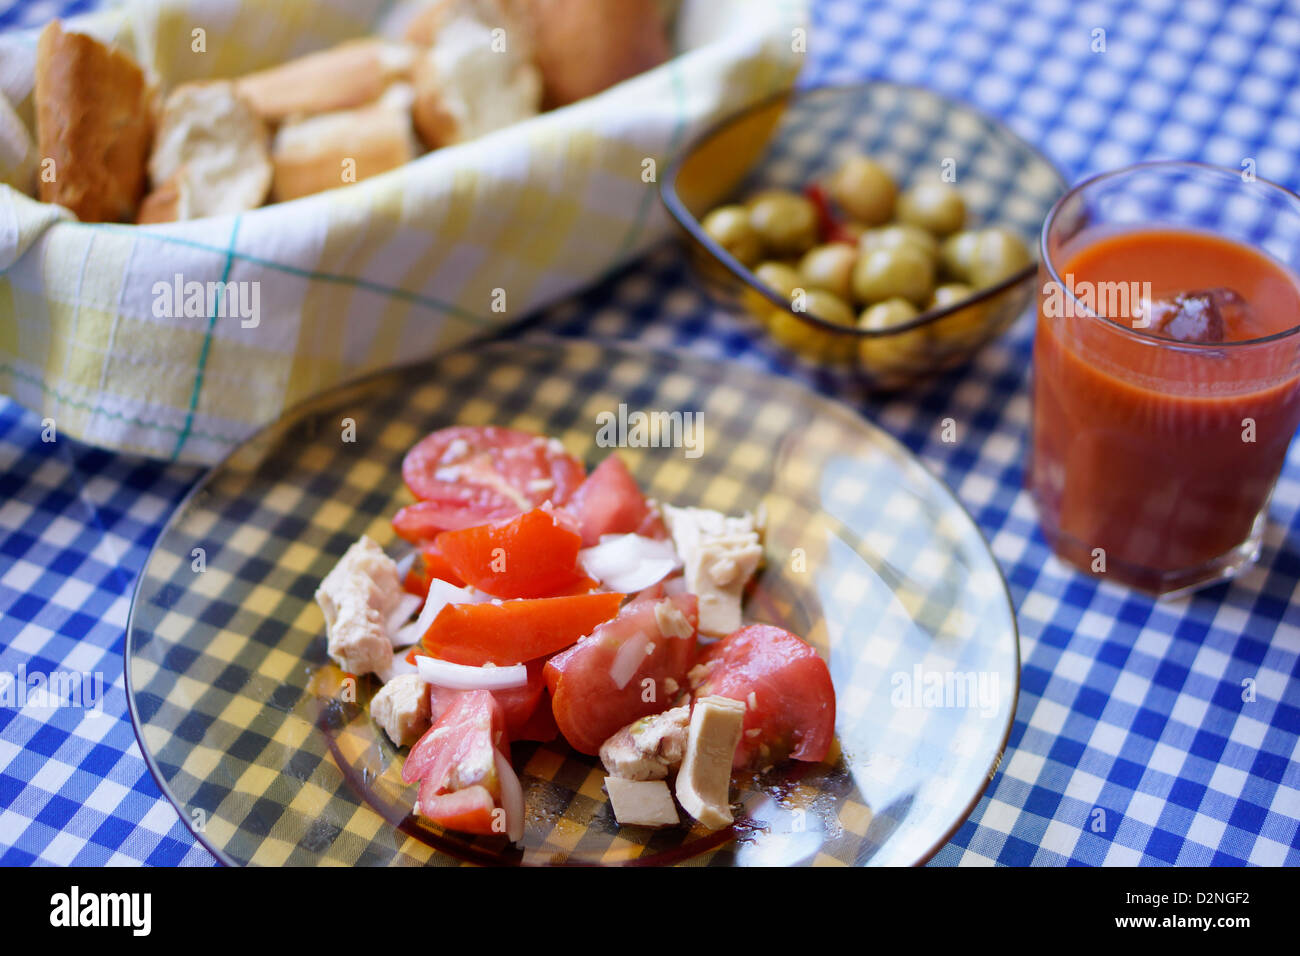 mediteranean Mediterranean diet tomato tuna gazpacho bread olive Stock Photo